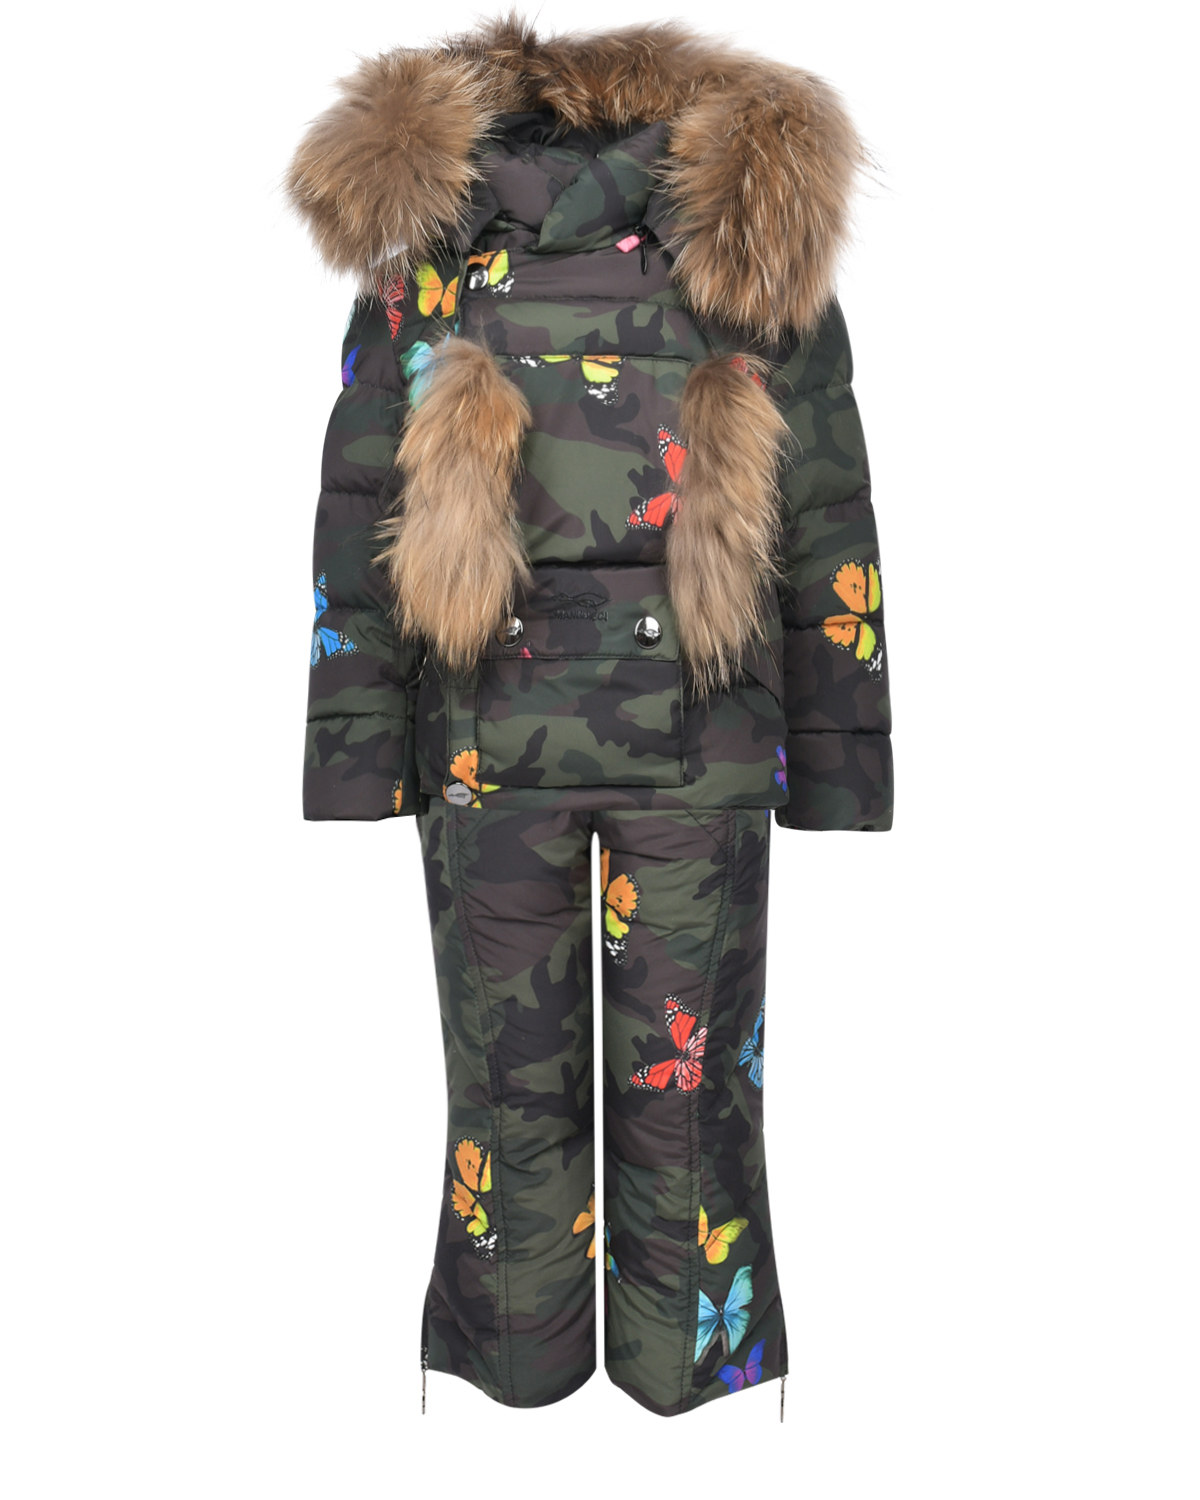 Комплект с принтом "милитари": куртка и полукомбинезон Manudieci детский, размер 92, цвет черный - фото 1